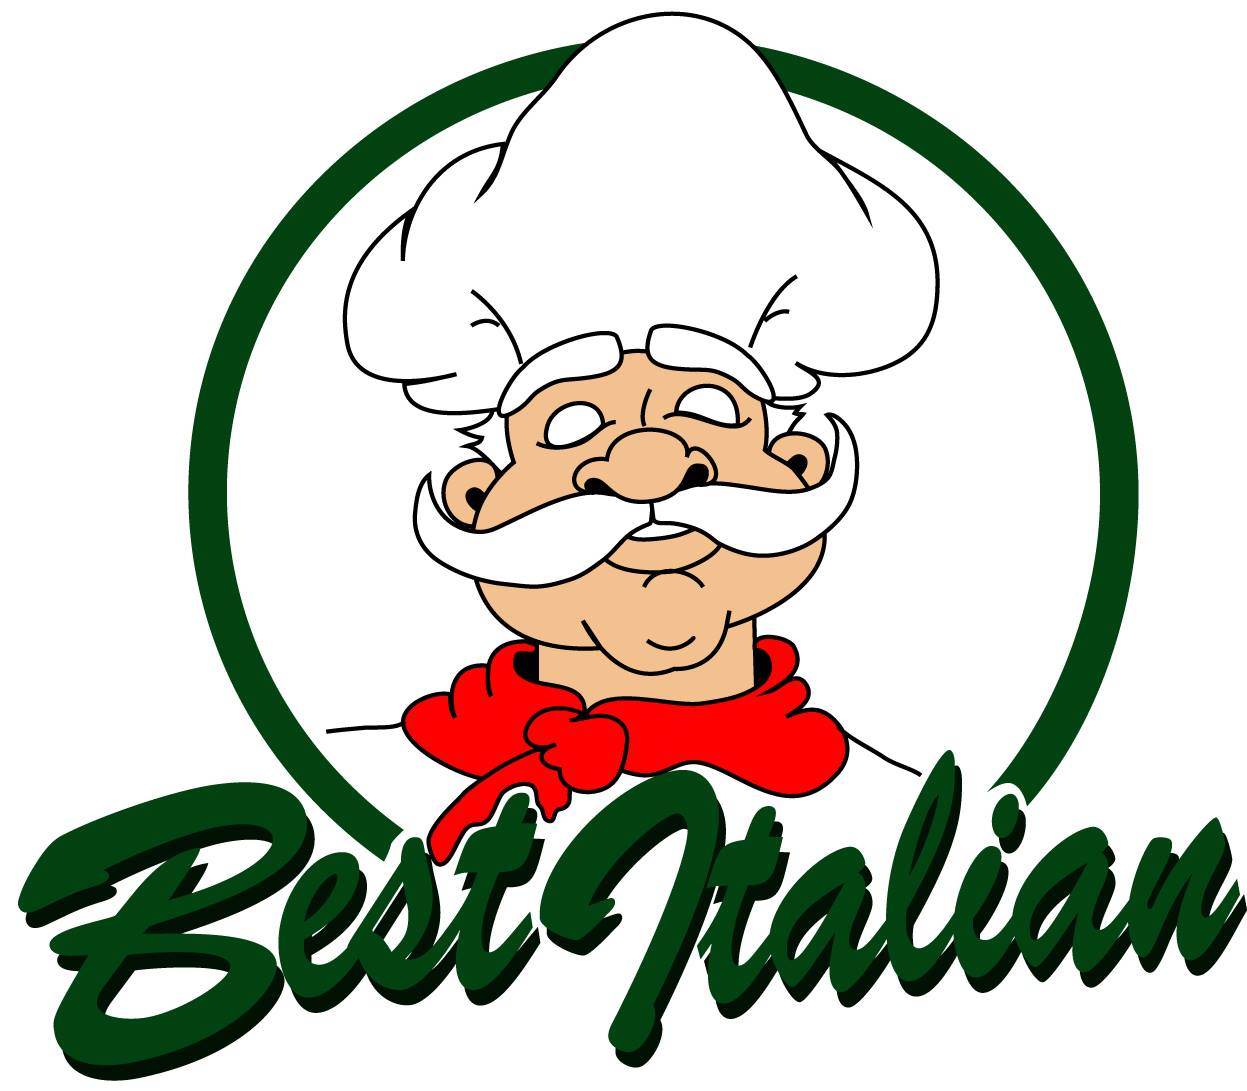 italian clipart restaurant italian